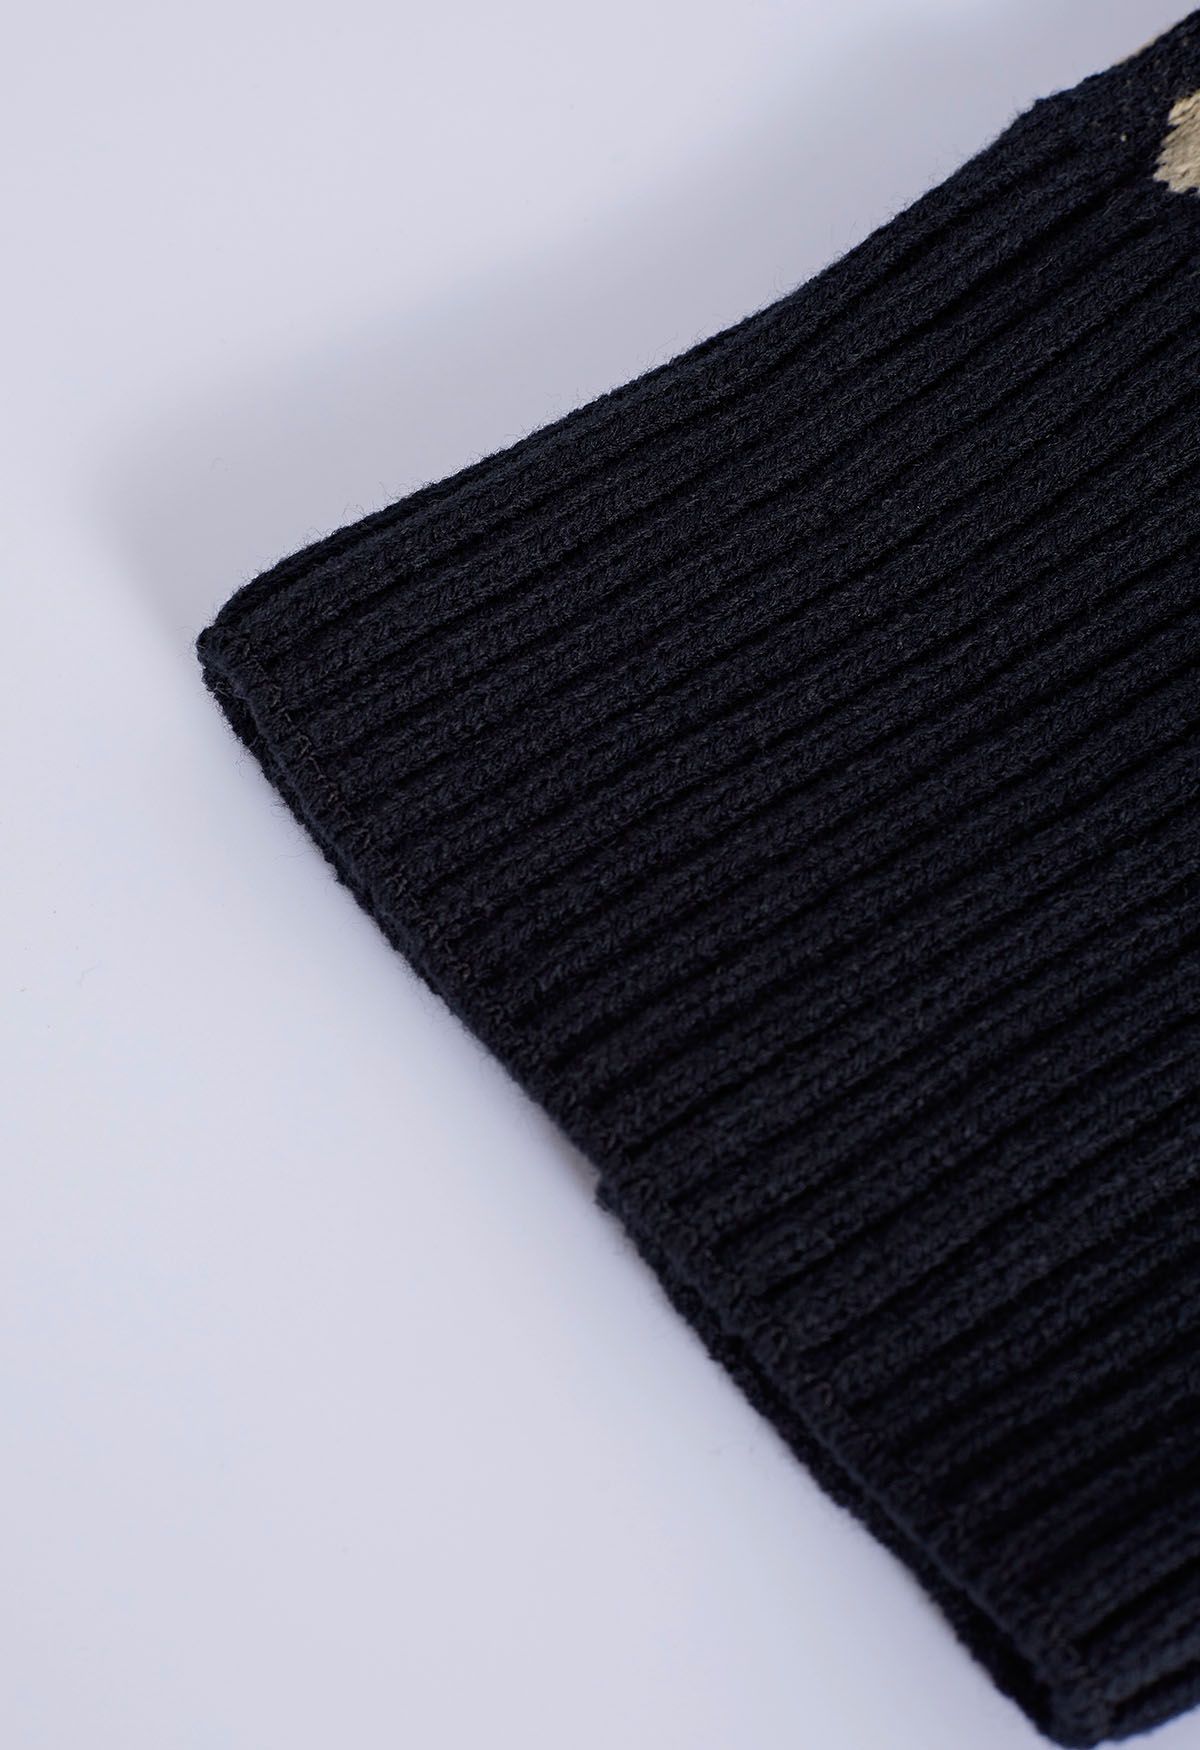 Fuzzy Pom-Pom Leopard Knit Beanie Hat in Black